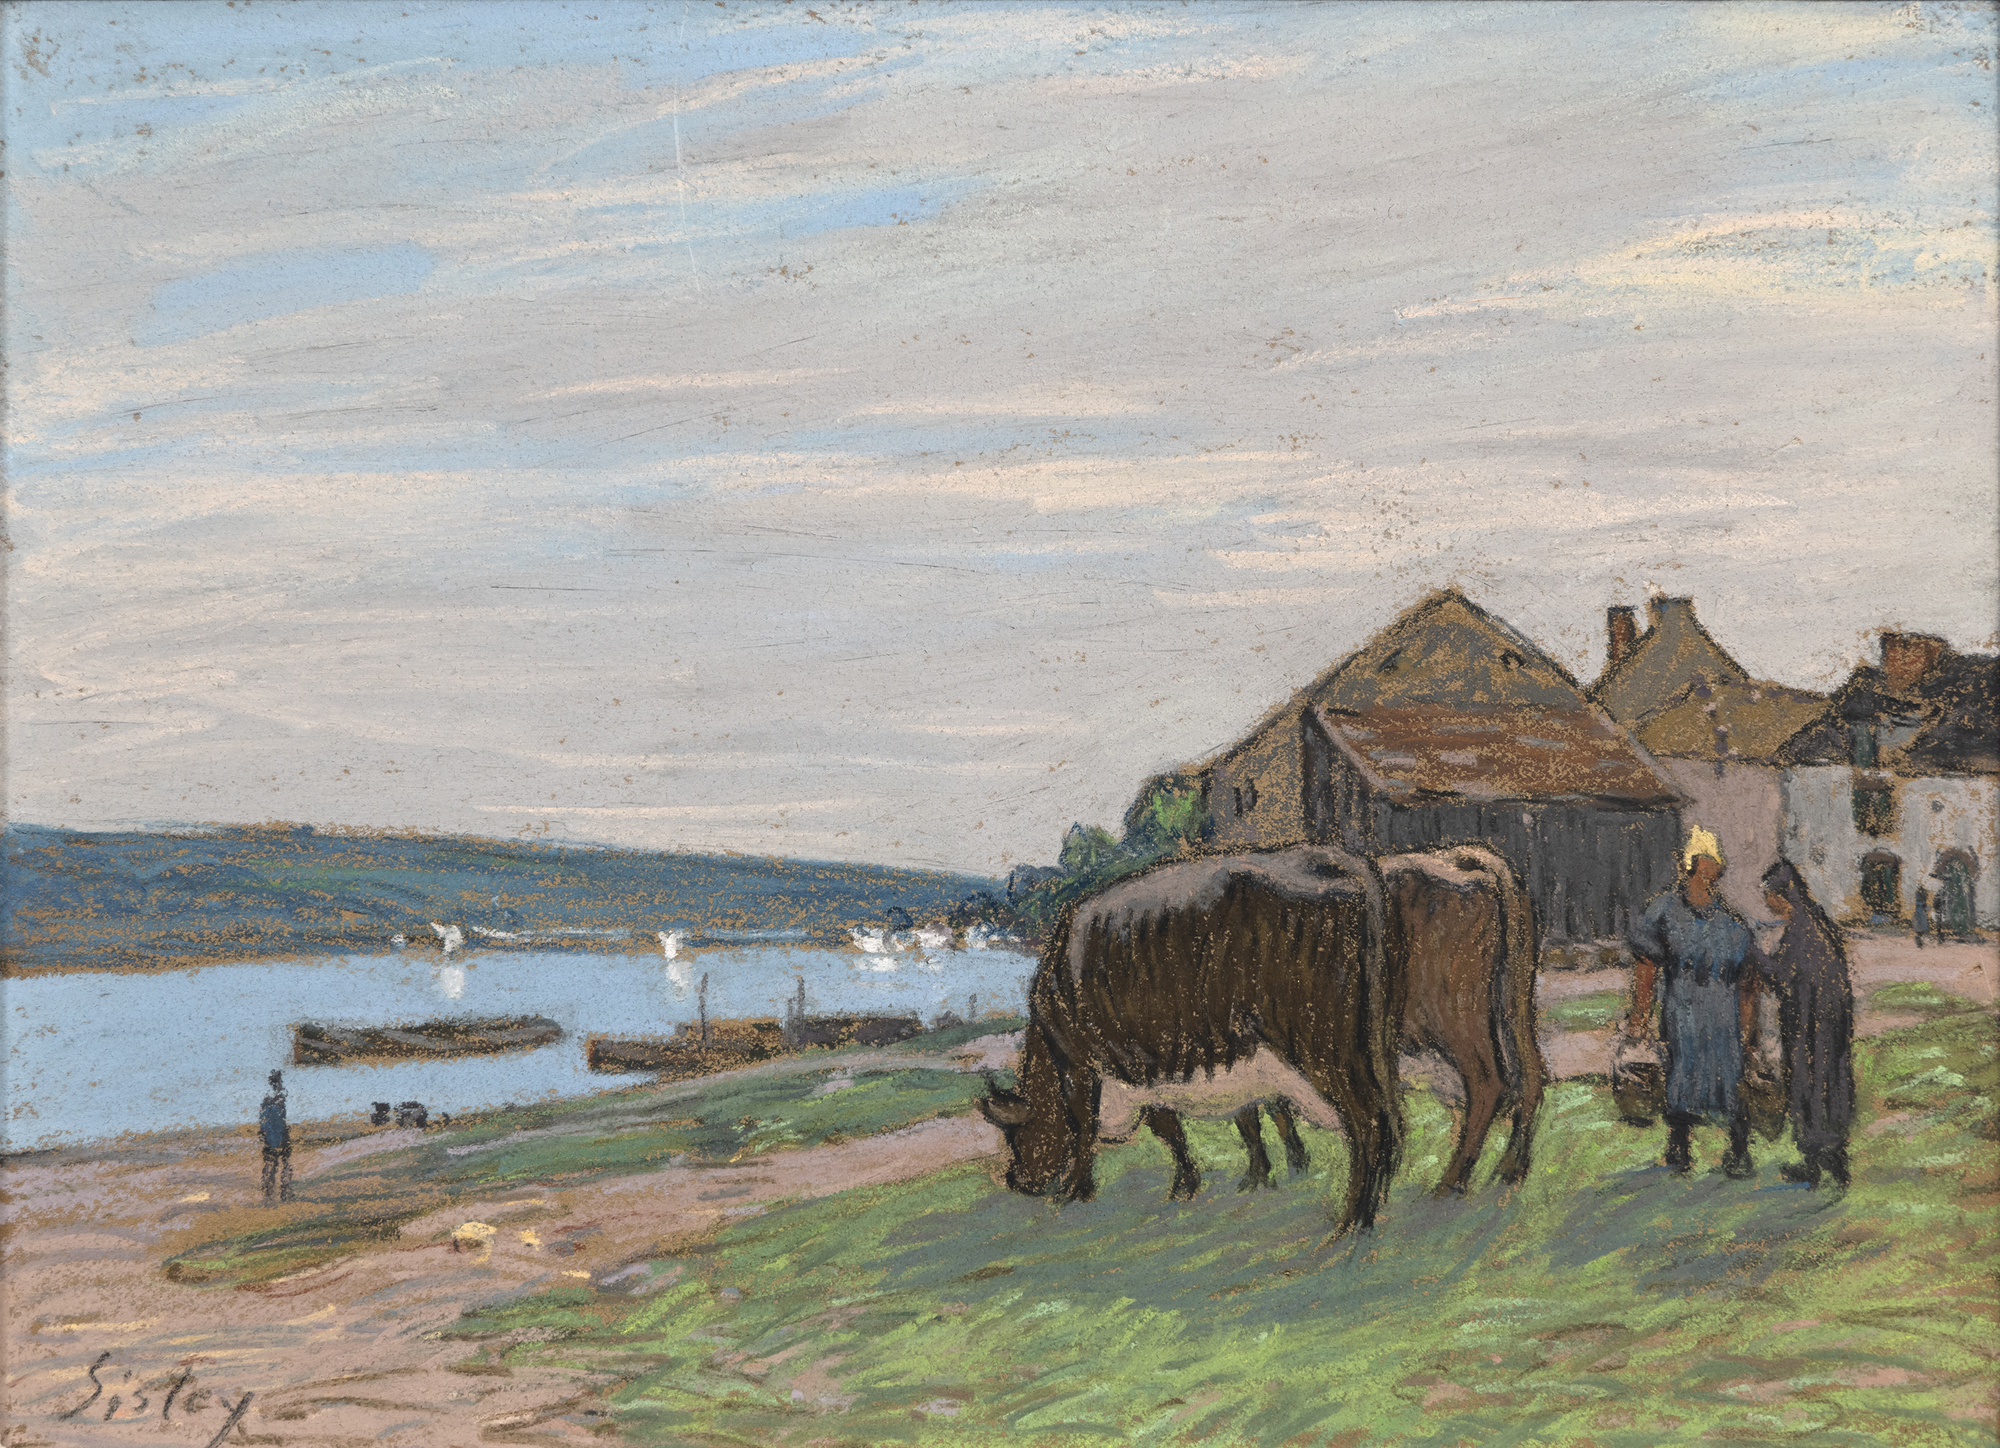 ALFRED SISLEY - Vaches au paturage sur les bords de la Seine - pastel on paper - 11 1/4 x 15 1/2 in.